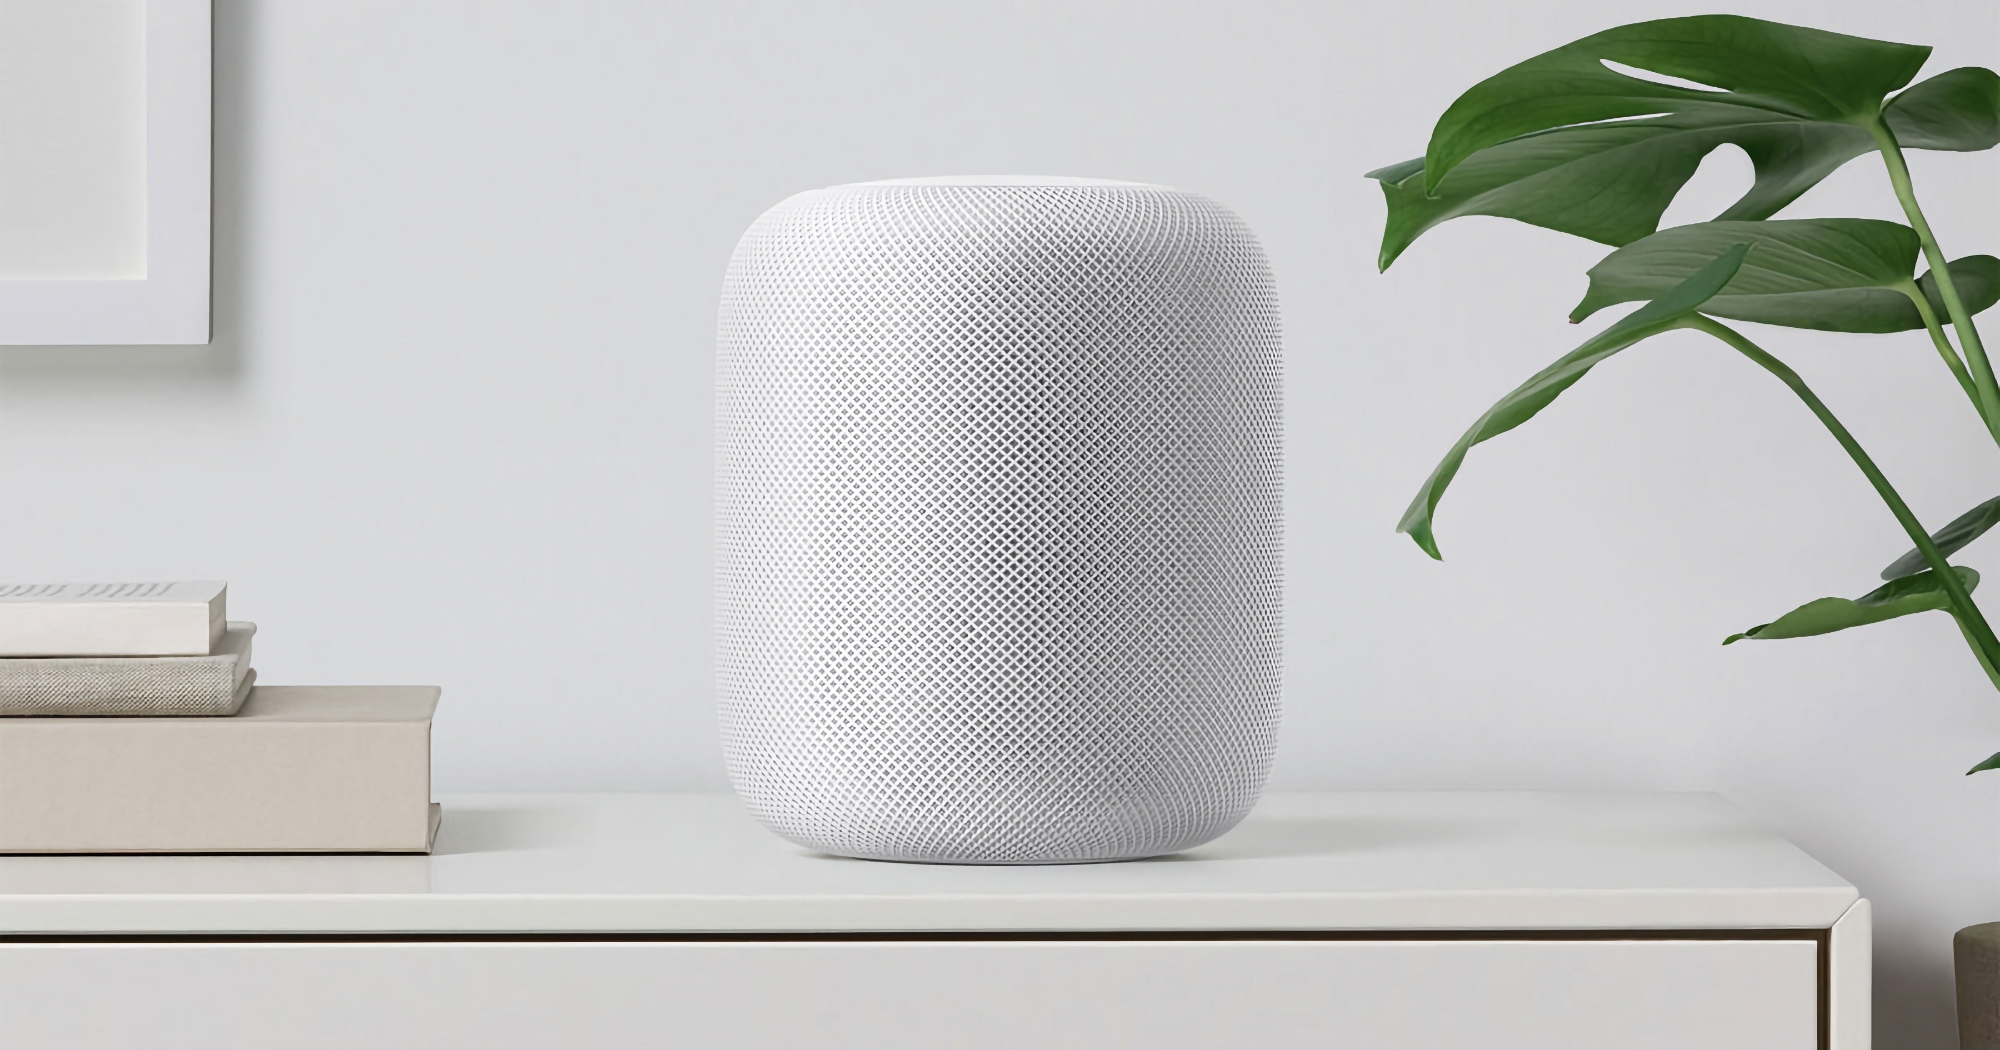 Niespodziewanie! Apple przygotowuje się do wydania nowego, pełnowymiarowego inteligentnego głośnika HomePod